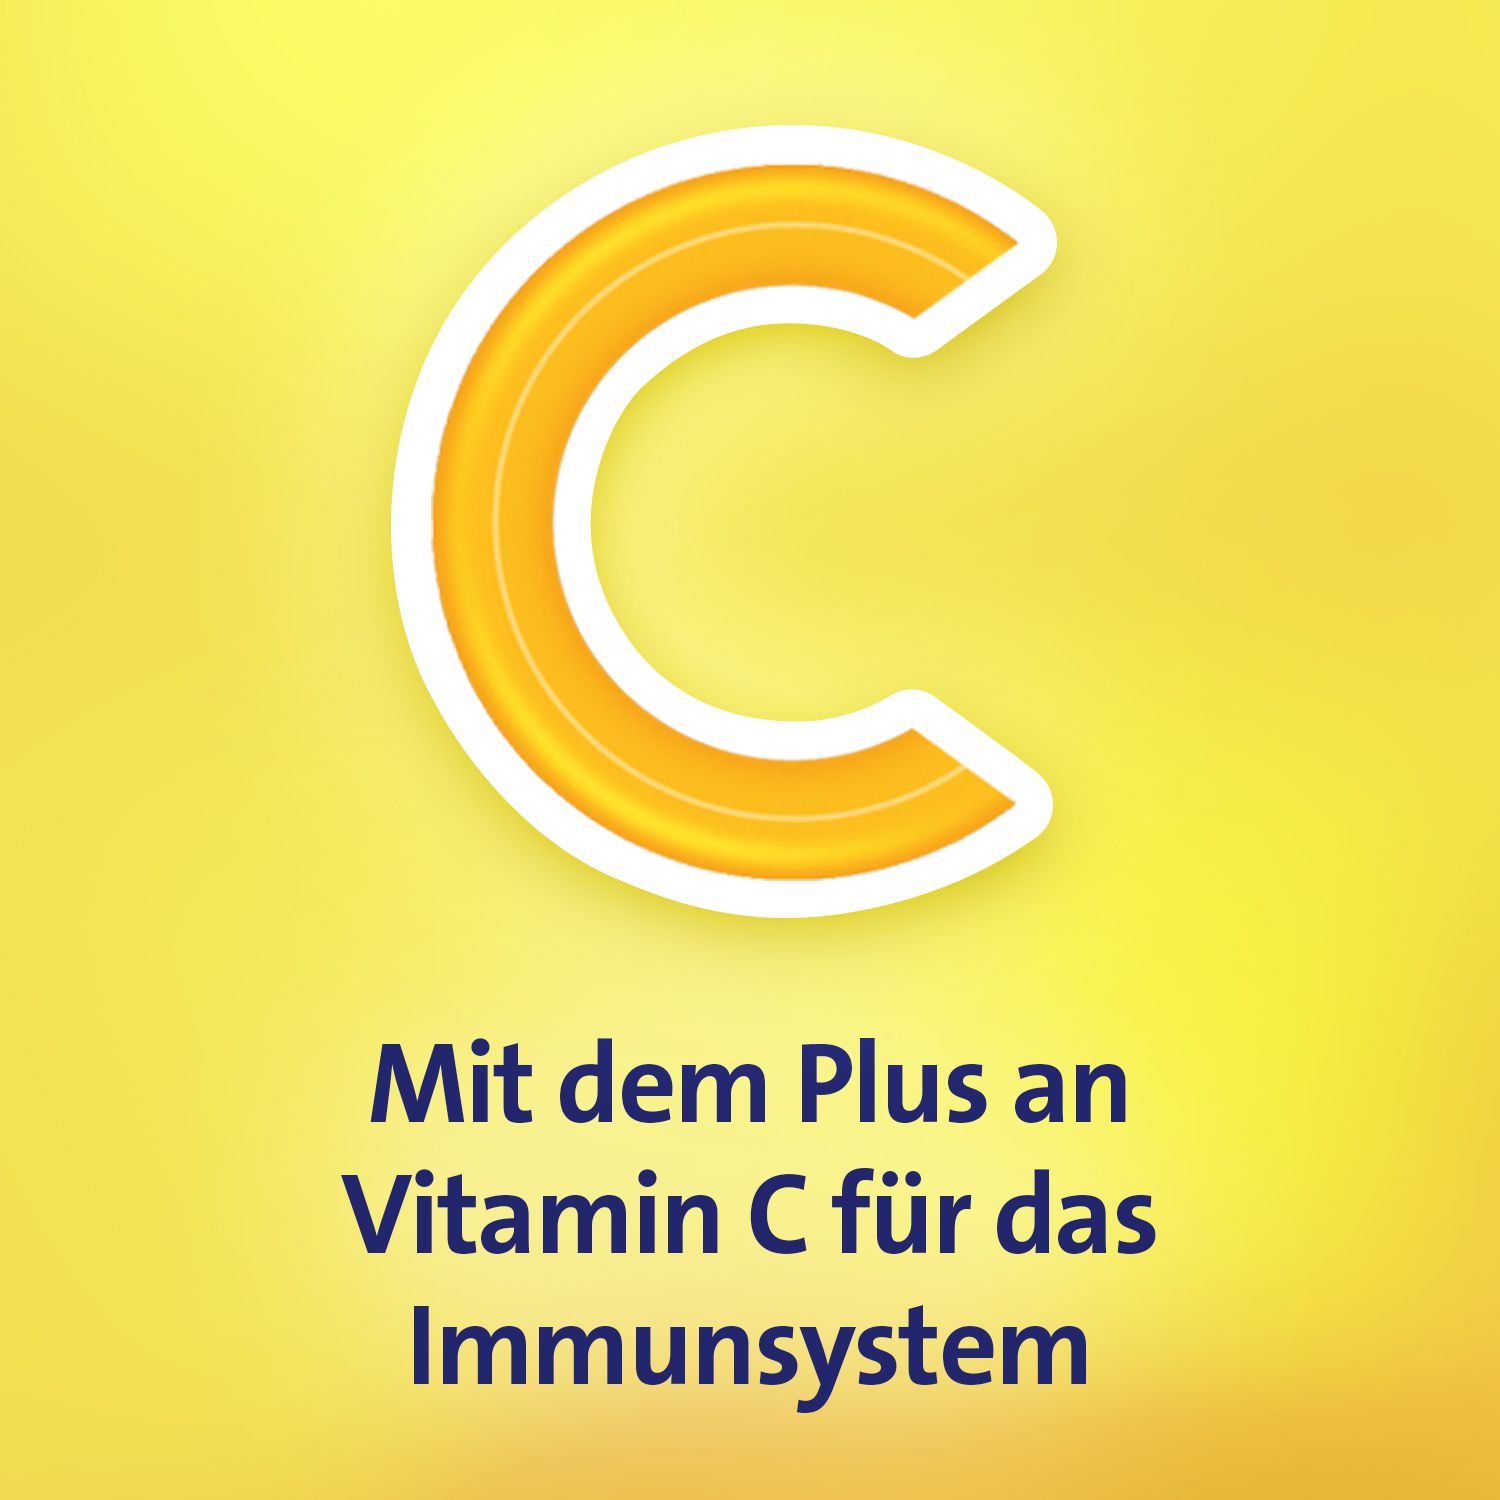 GRIPPOSTAD C Hartkapseln gegen grippale Infekte und Erkältungskrankheiten mit Vitamin C